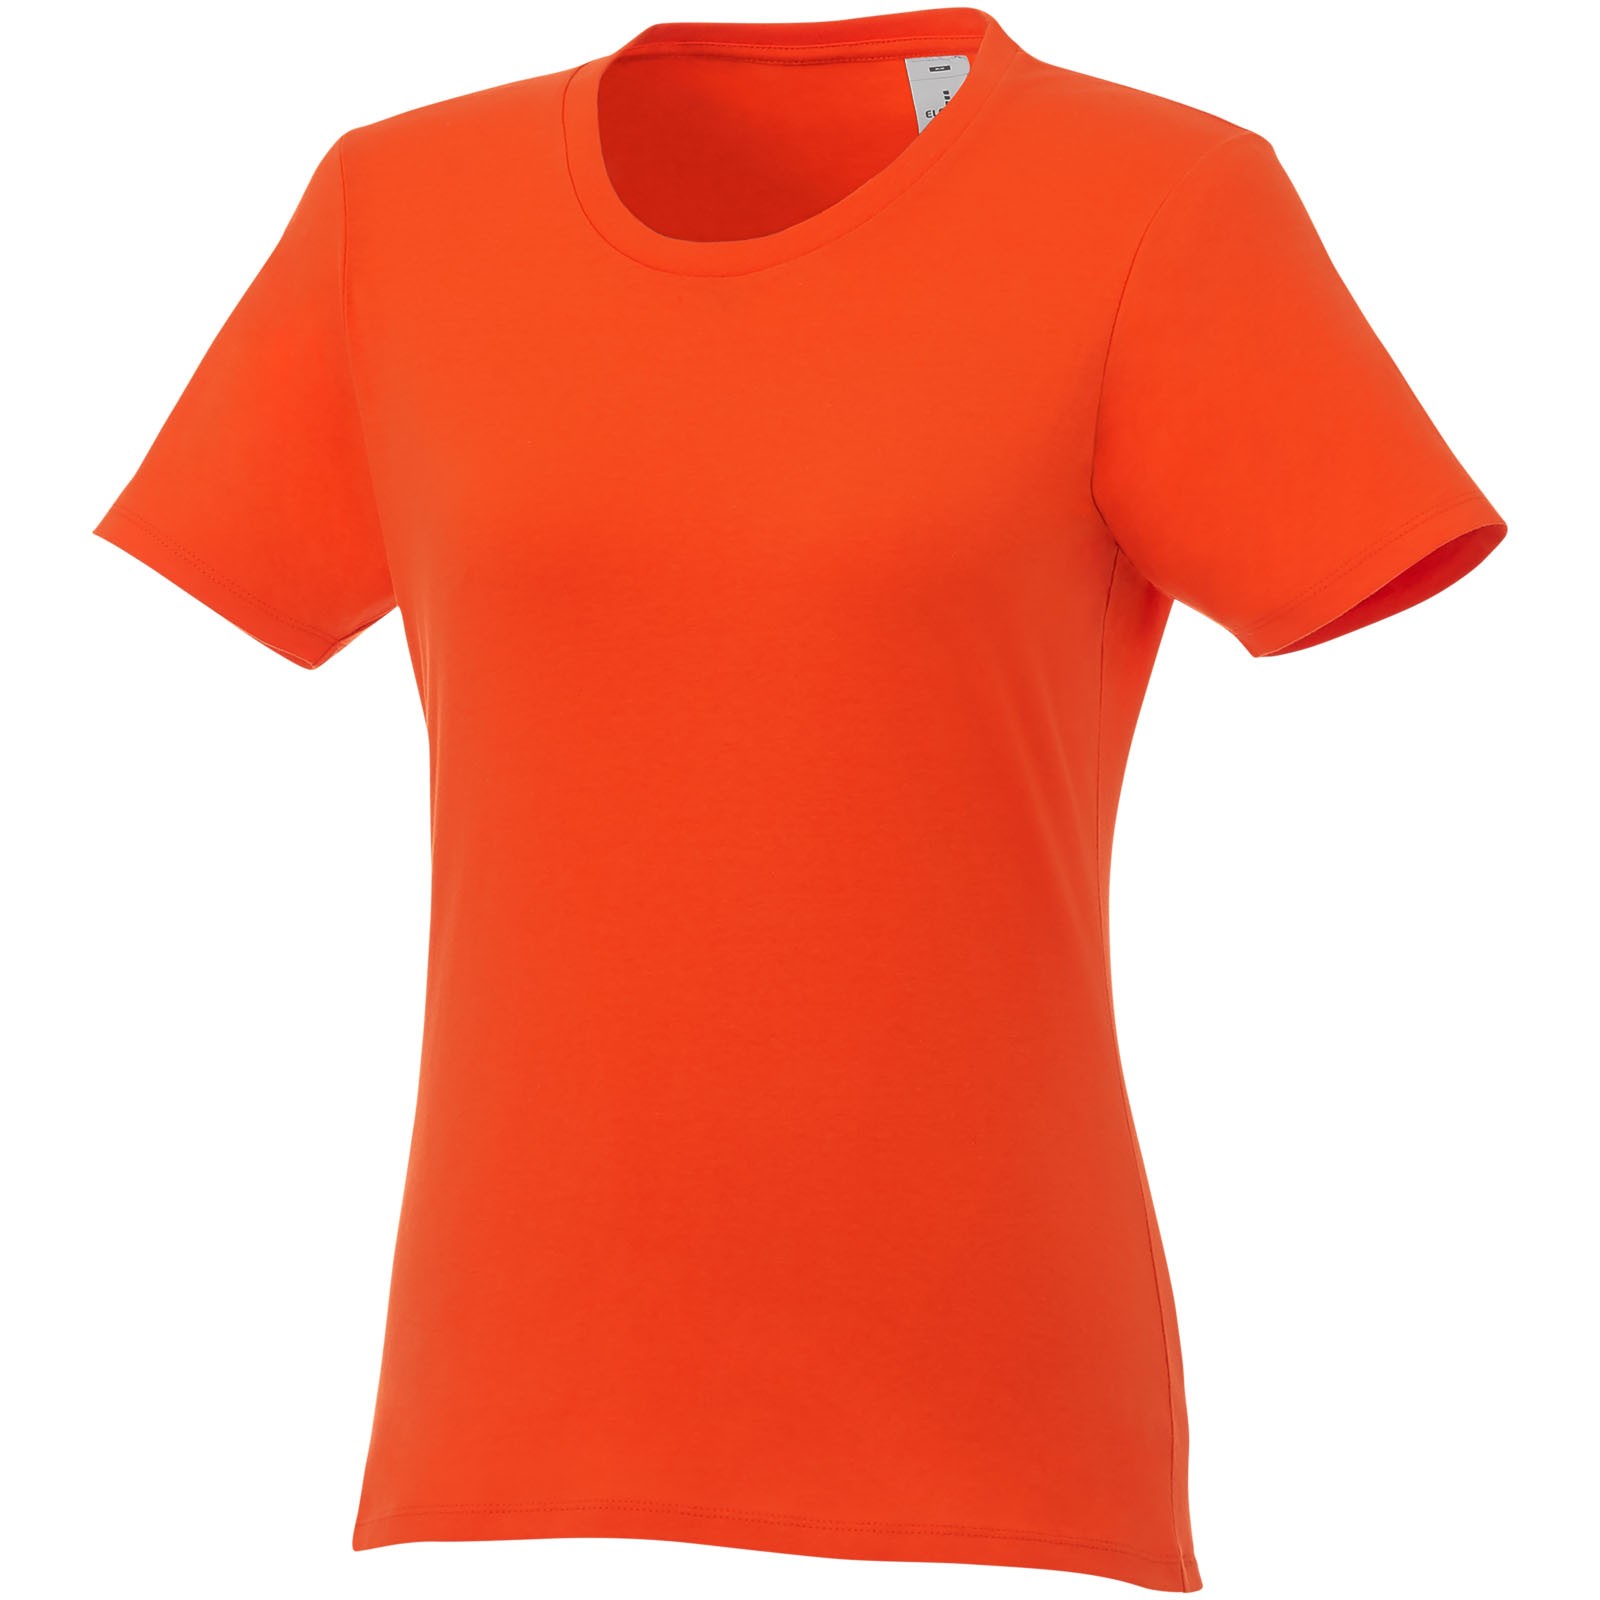 T-shirt damski z krótkim rękawem Heros - Pomarańczowy / XS